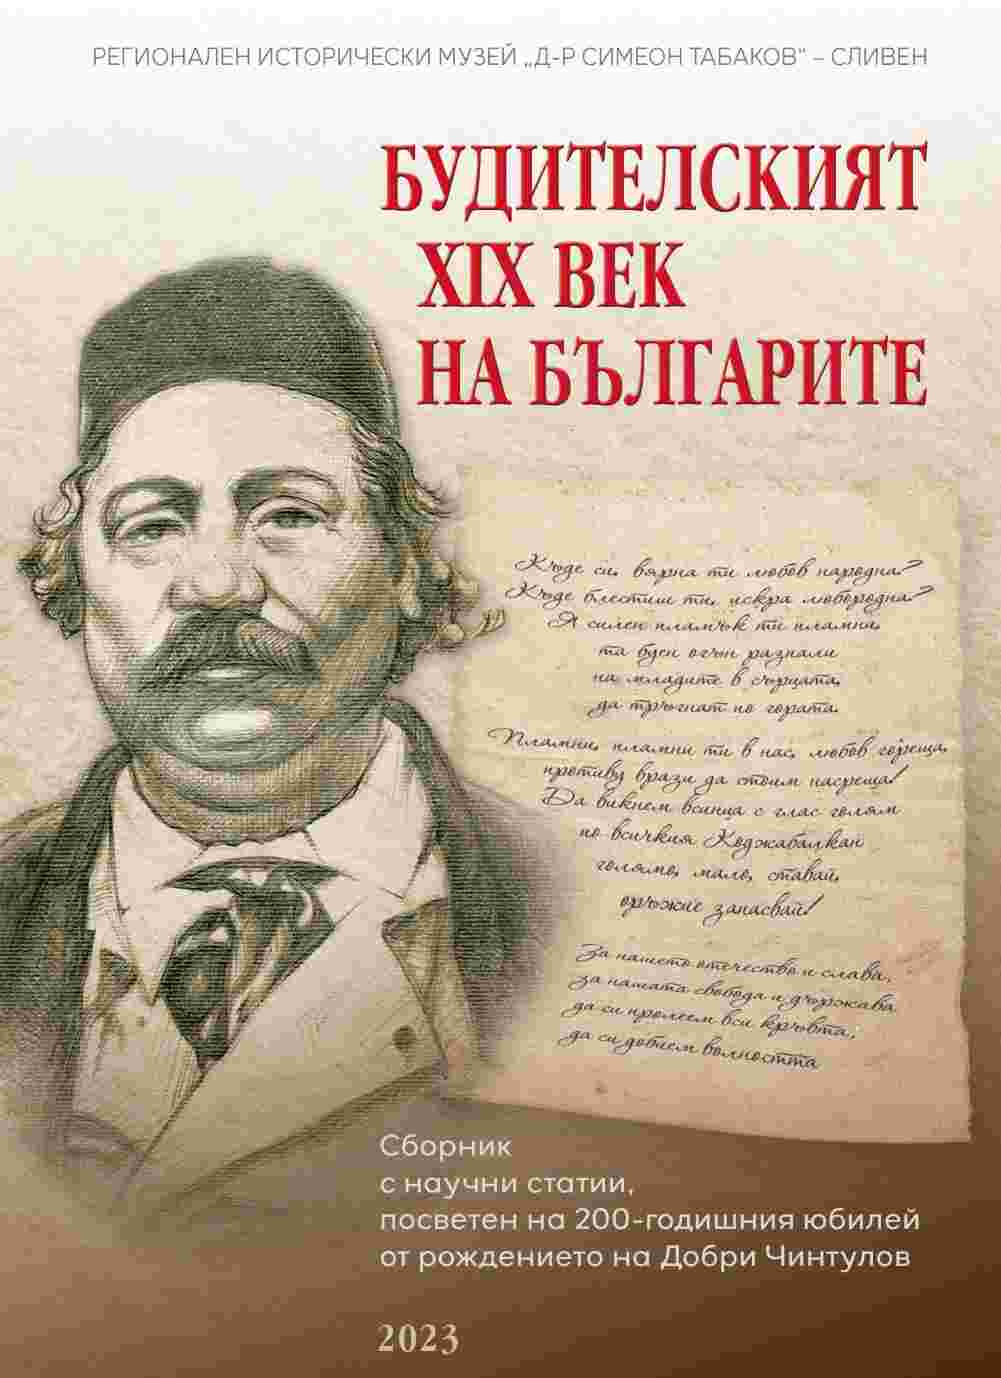 Сведения за археологически паметници в района на Сливен по пътеписи и описания от XVII до средата на XIX век